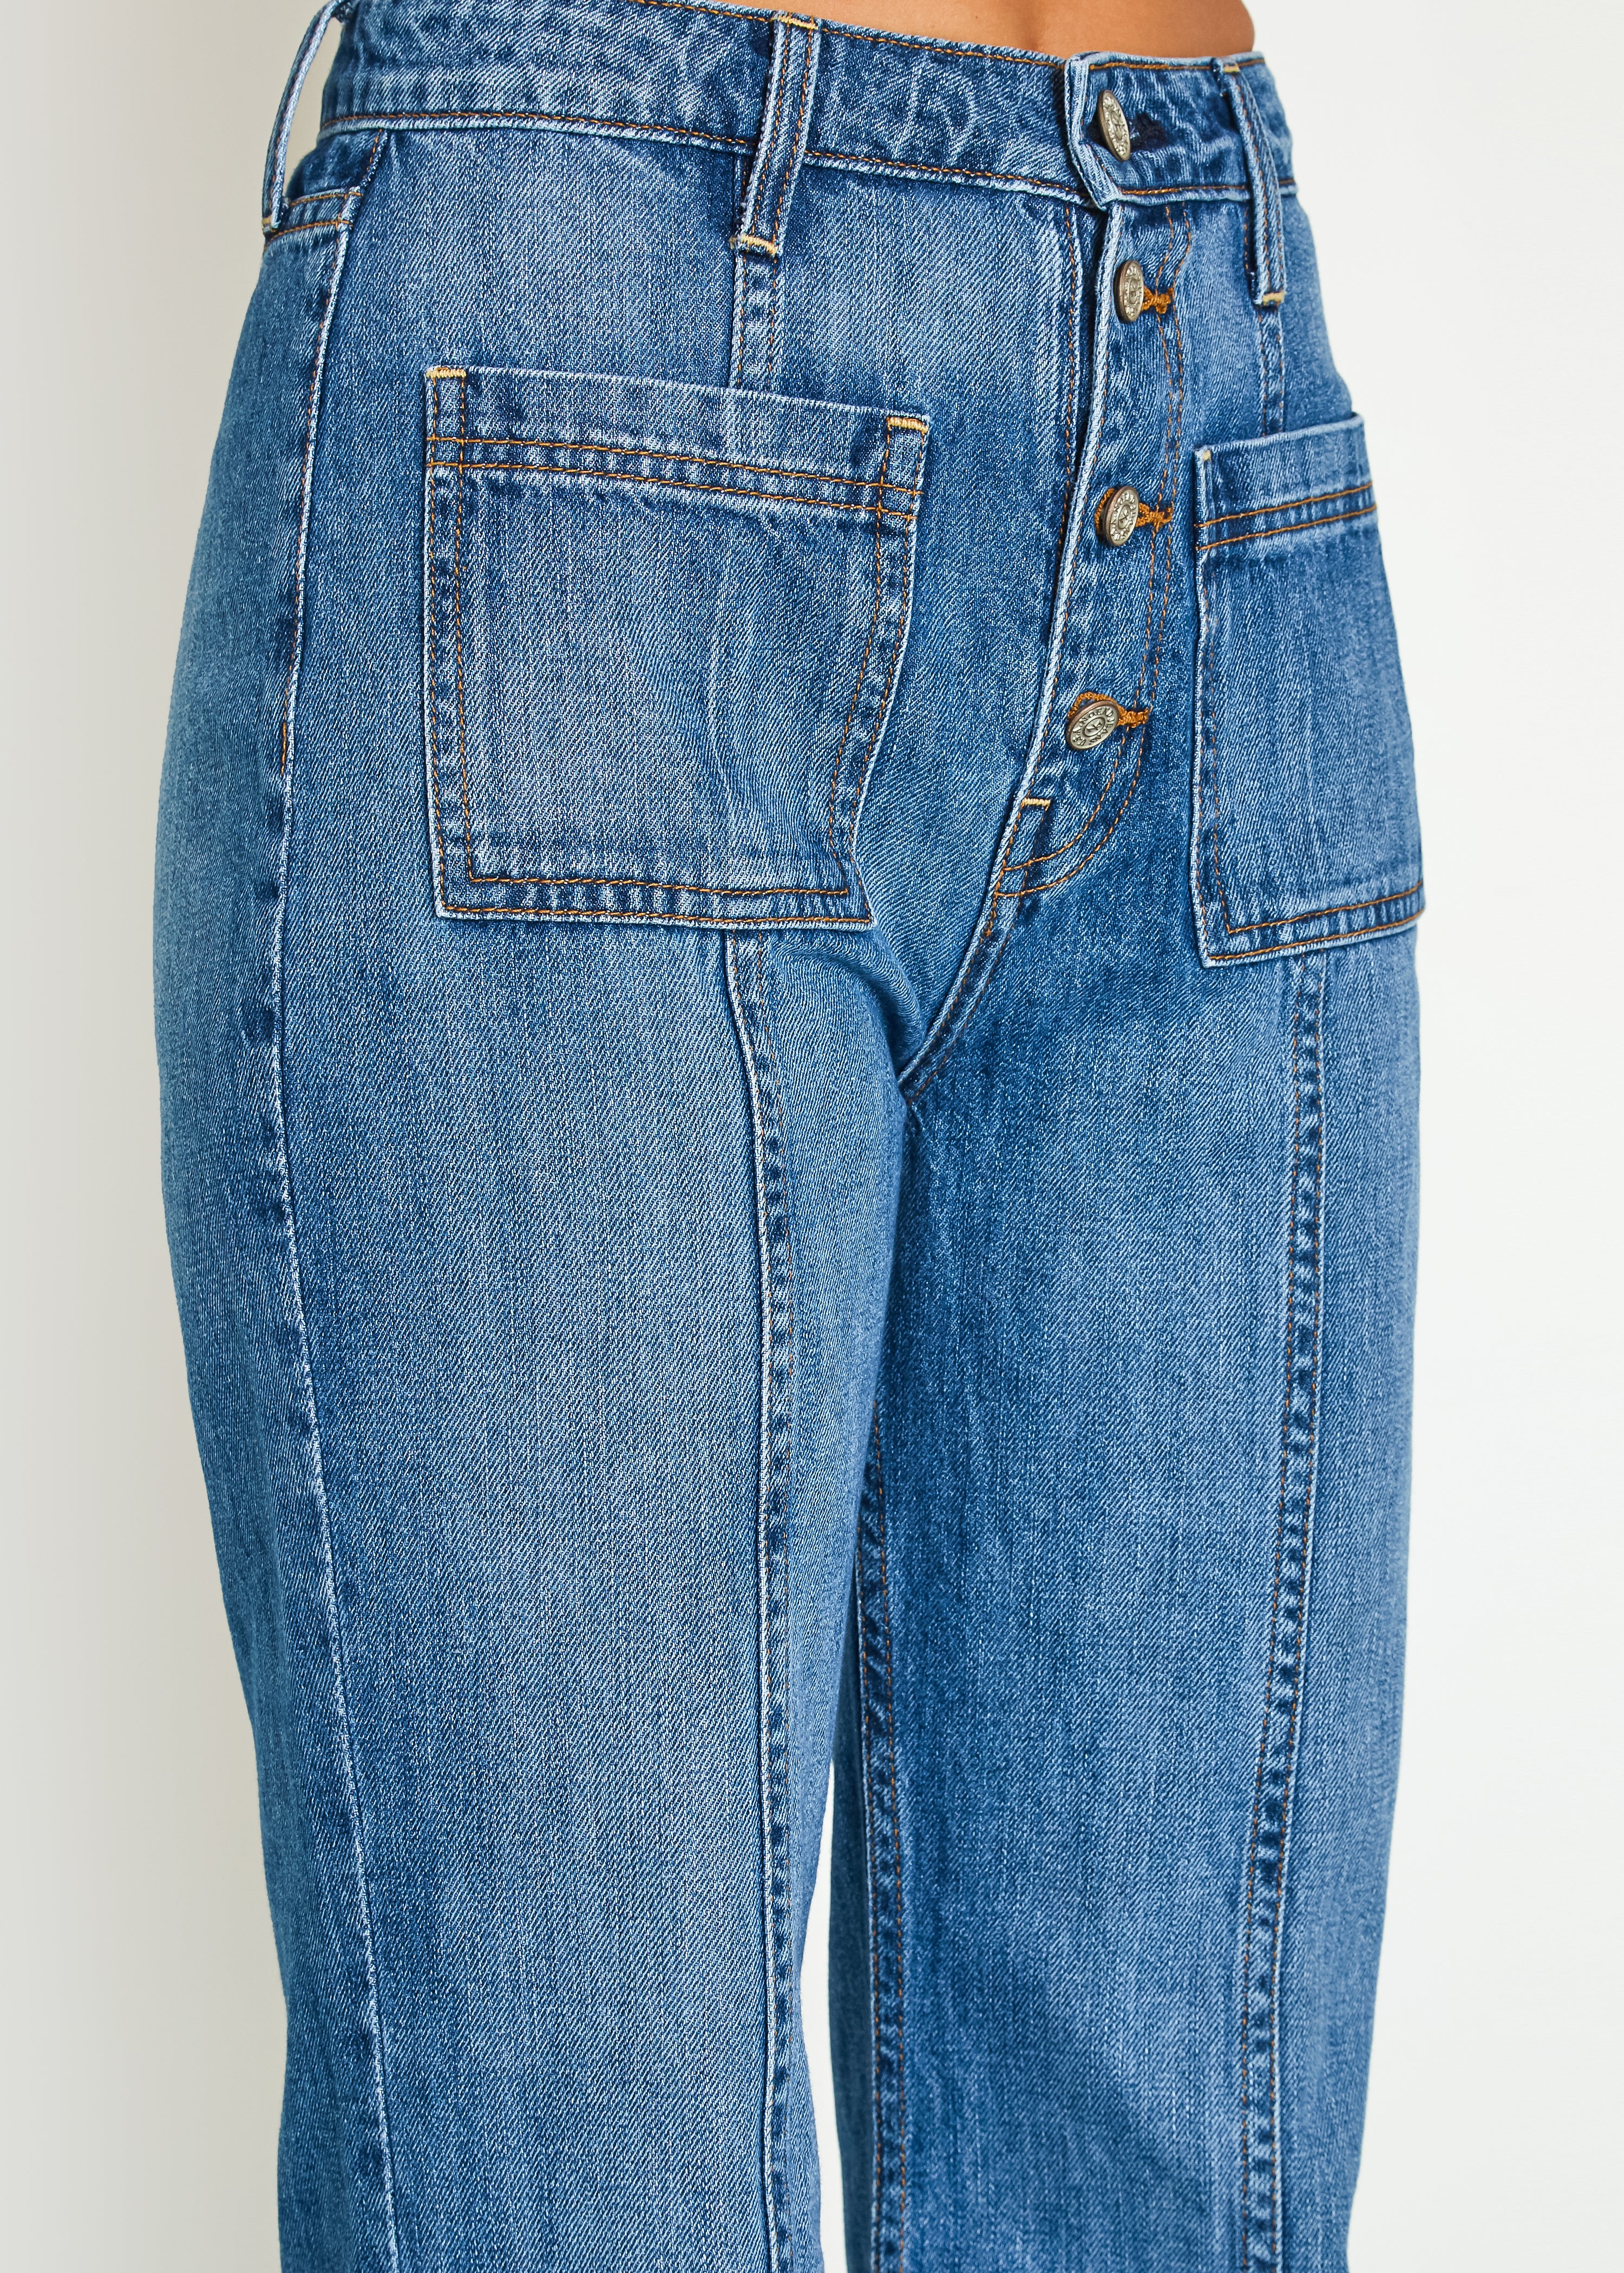 High Rise Patch Pocket Jeans In Laguna Beach - Noend Denim